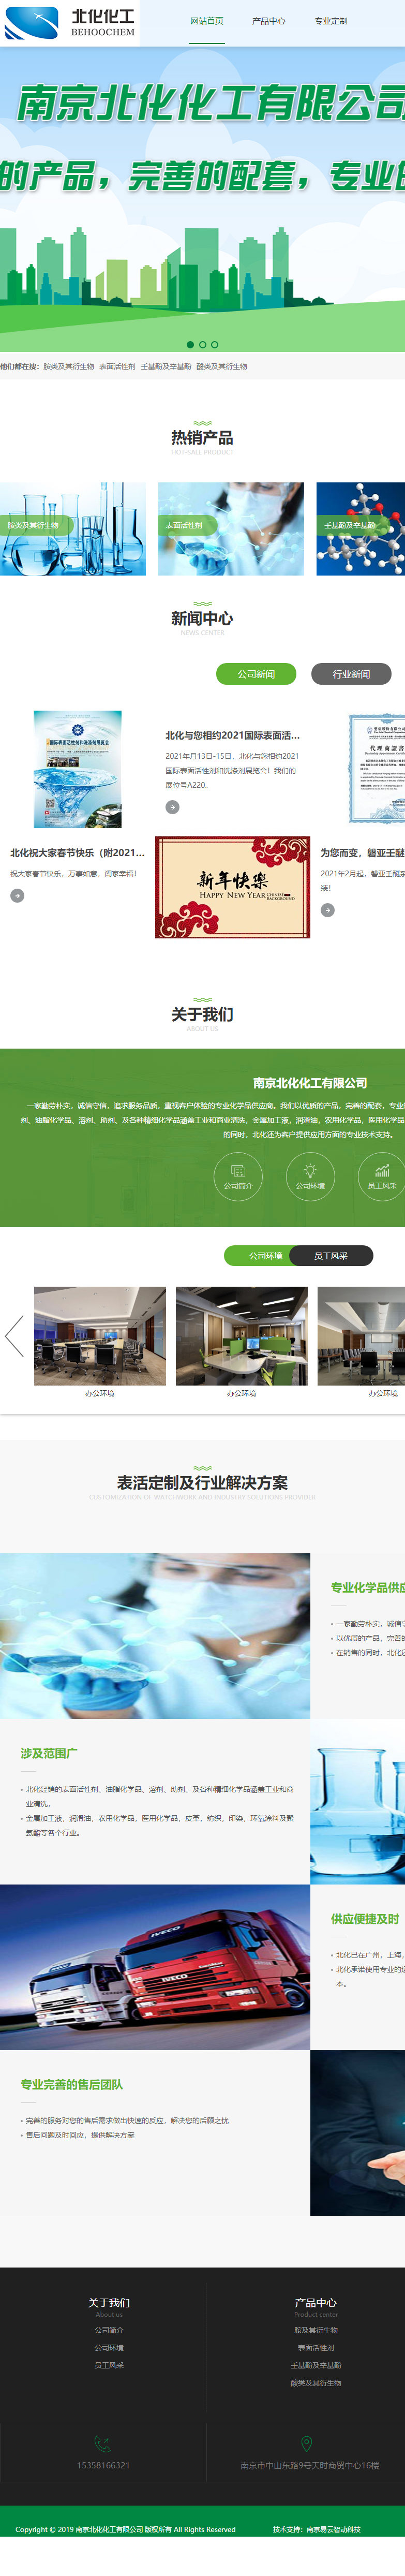 南京北化化工有限公司网站案例